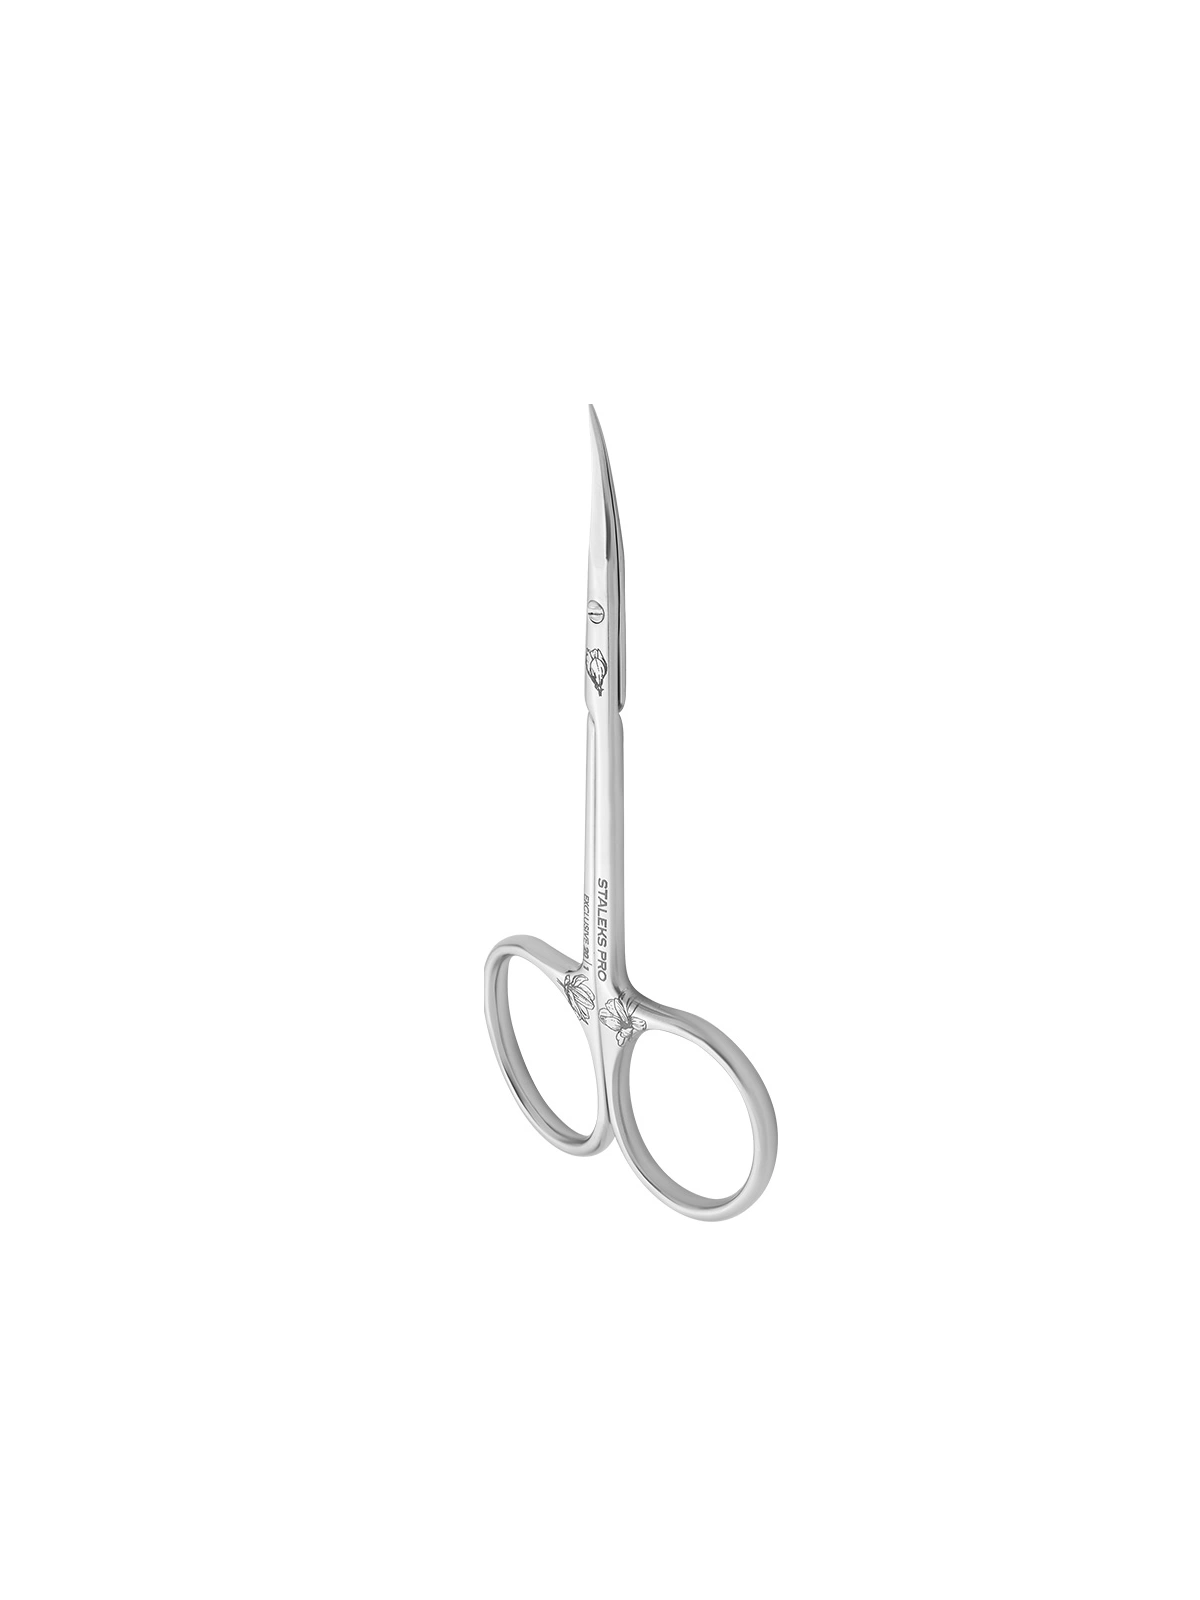 Nożyczki Staleks® SX-20/1 Magnolia